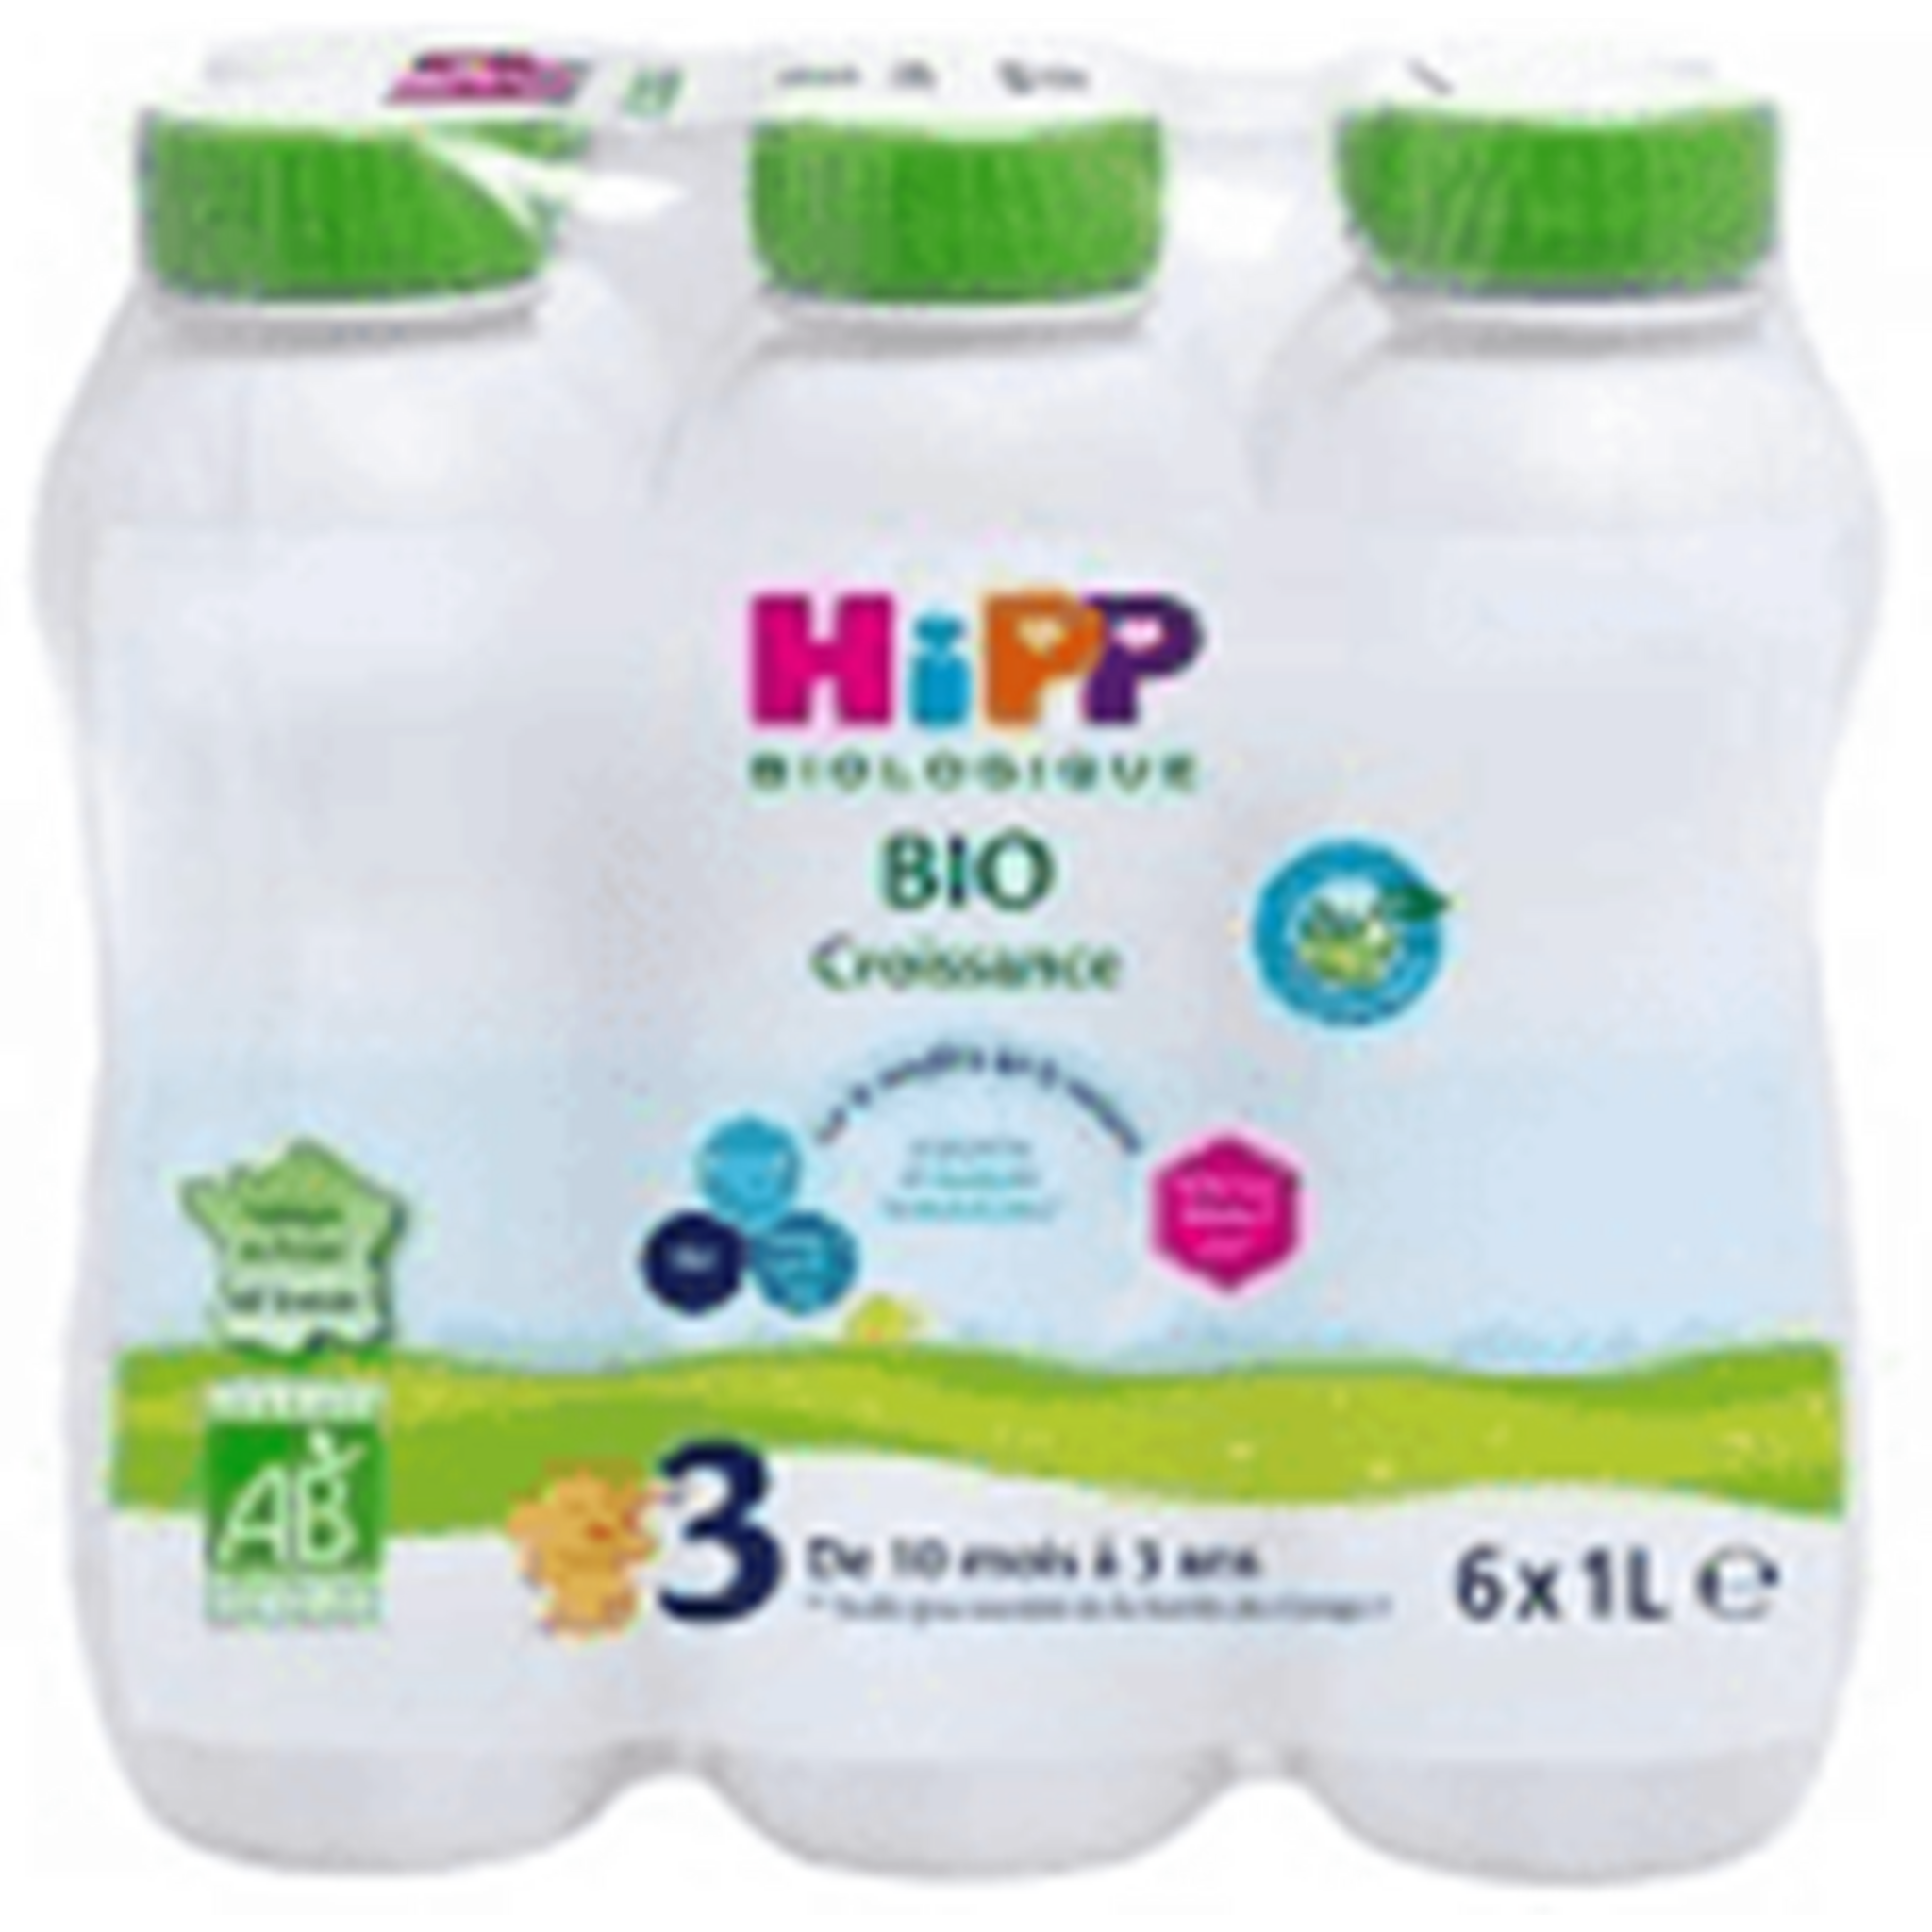 Lait de croissance combiotic 3 BIO - de 10 mois à 3 ans, Hipp (900